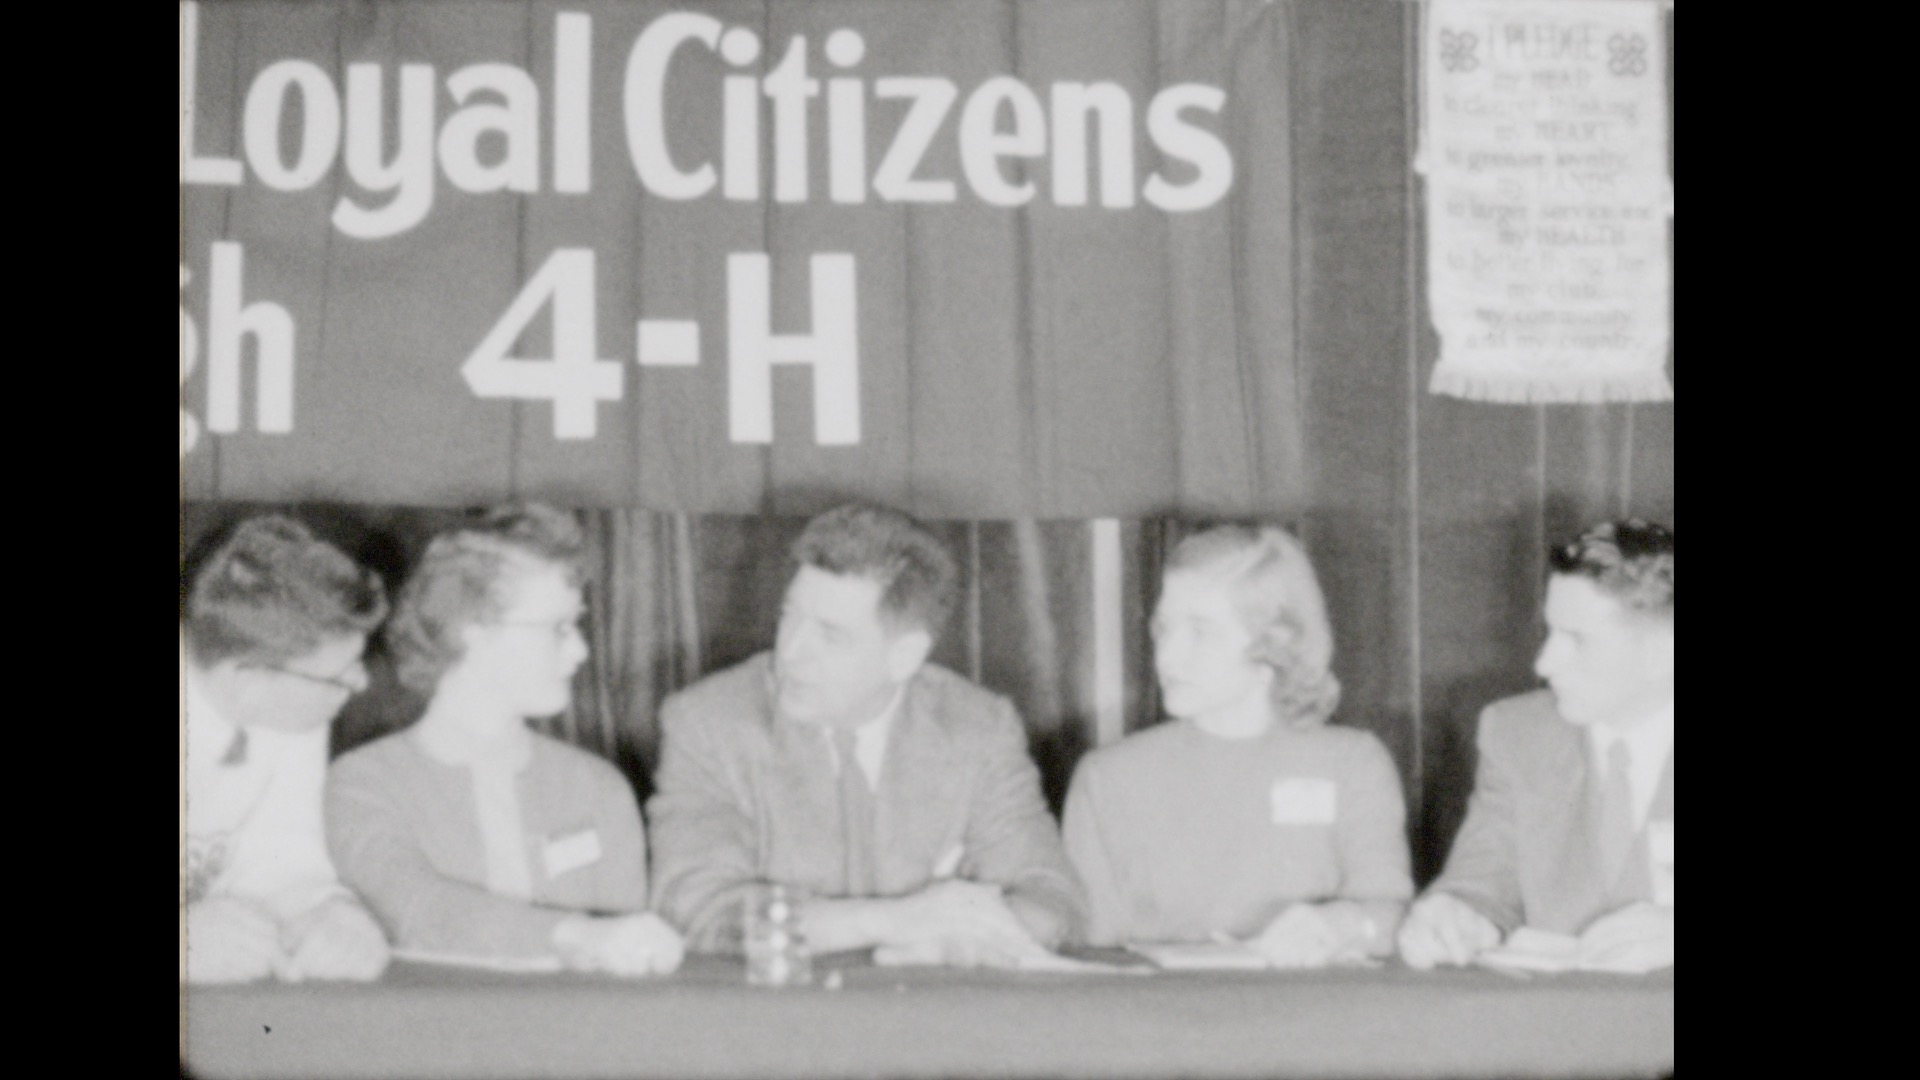 4-H Conference, circa 1952